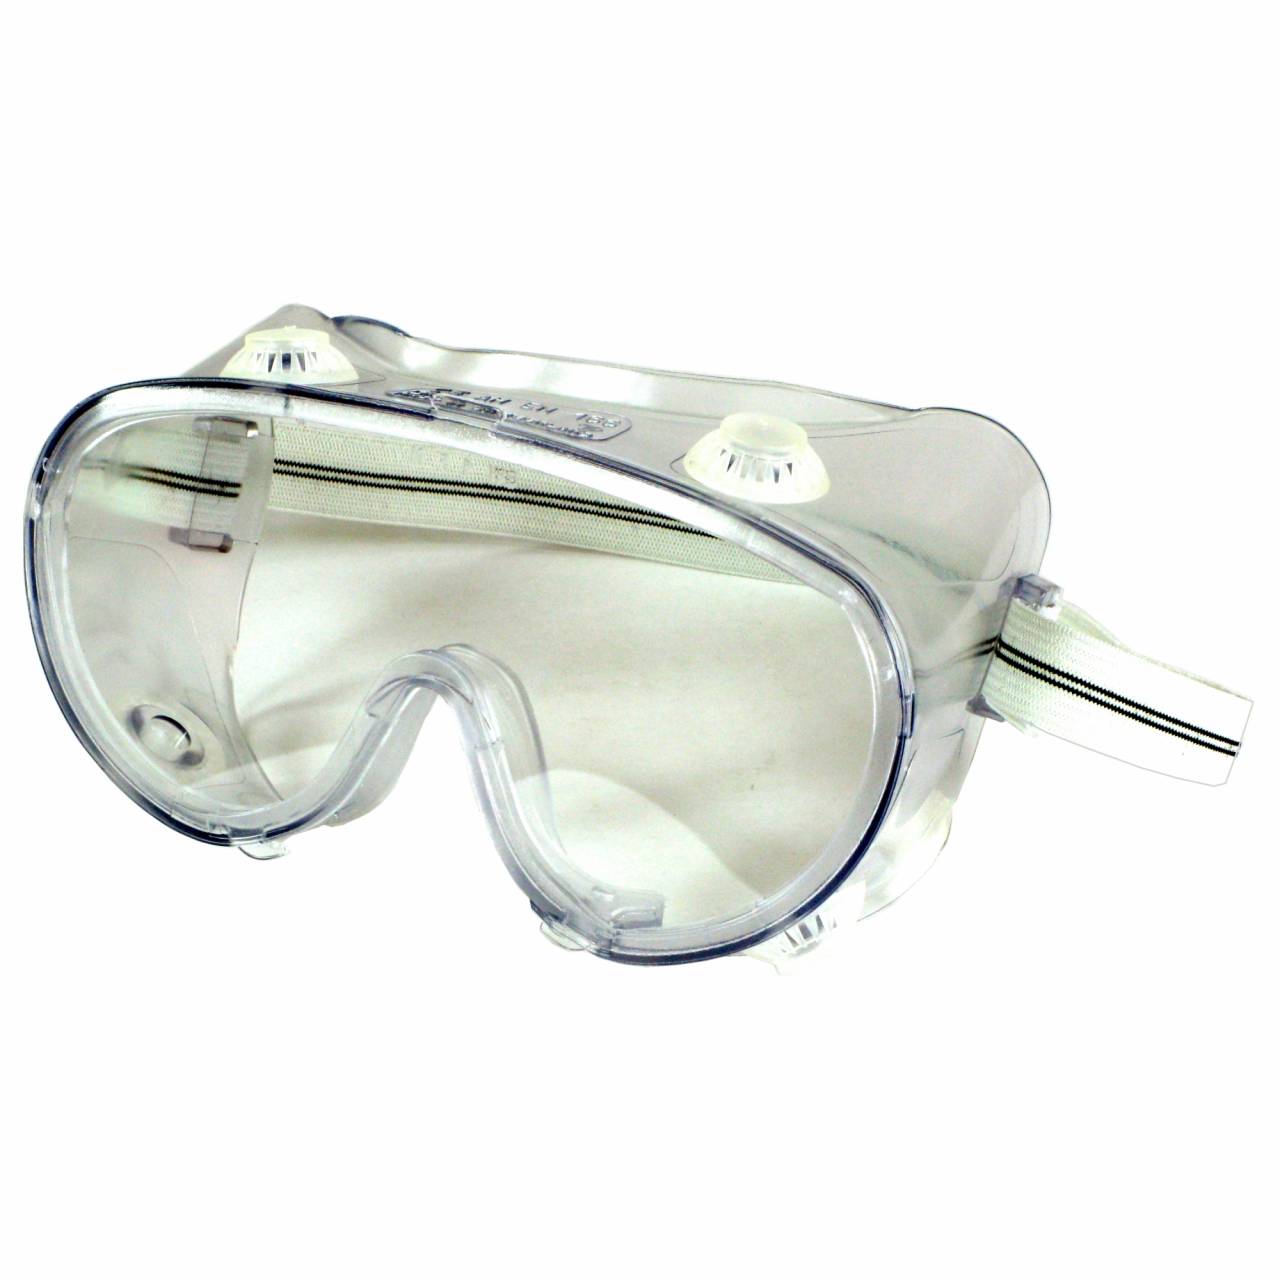 Arbeits-Vollsicht-Schutzbrille, beschlagsfrei, EN166-1B